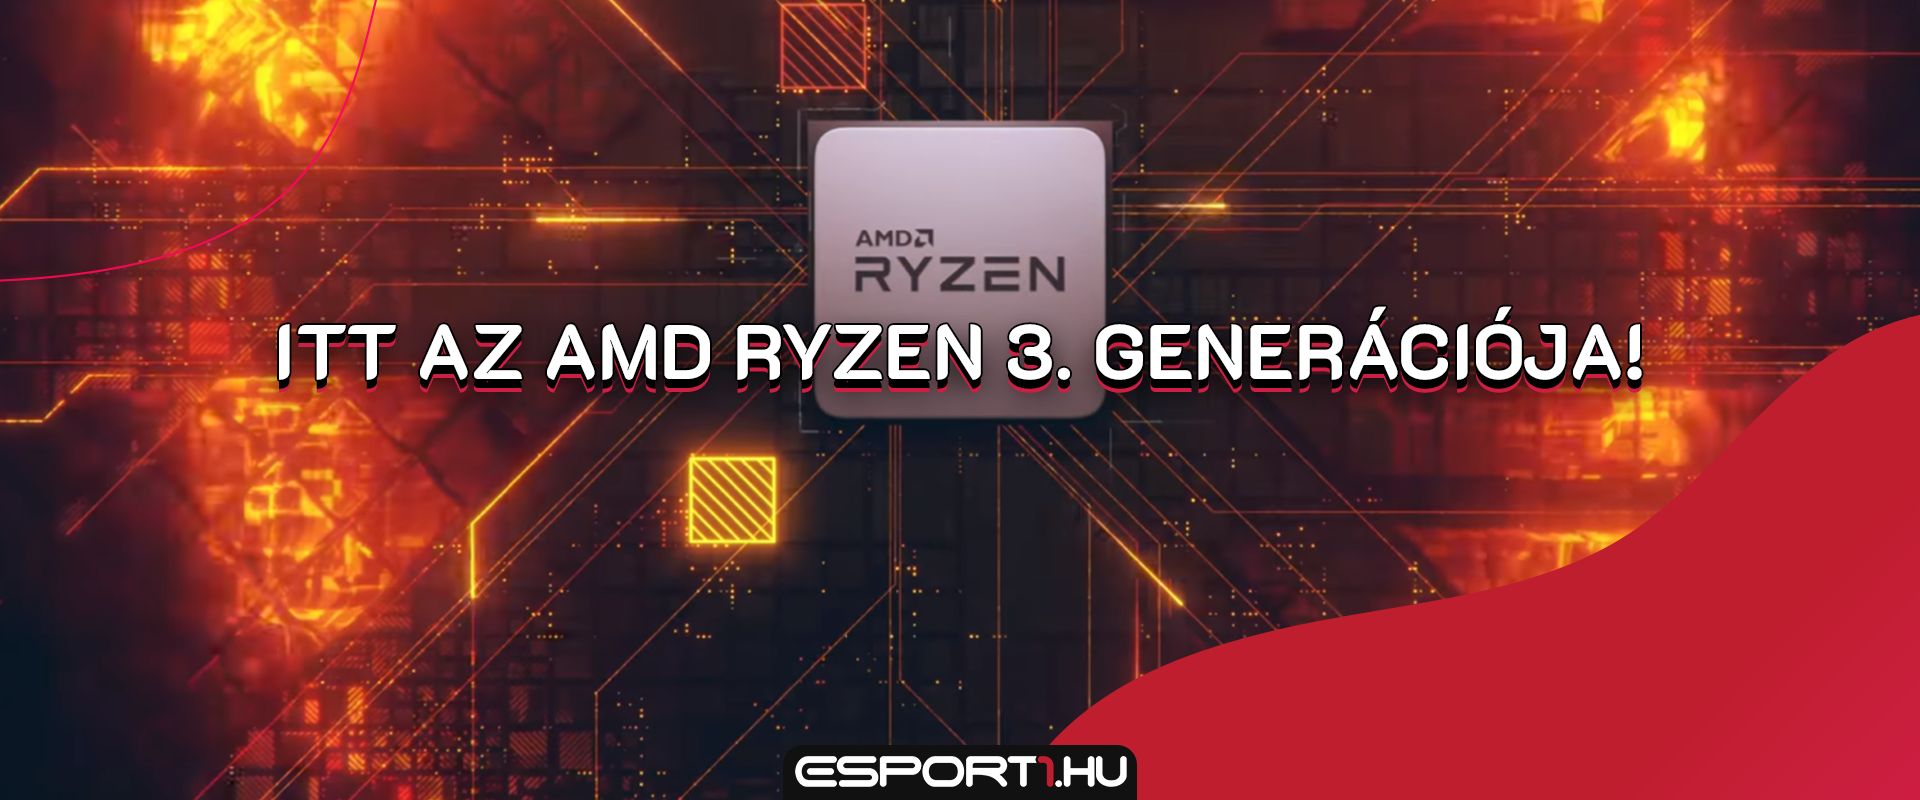 Először a világon 12 maggal támad az AMD Ryzen 9 3900X gaming processzor!